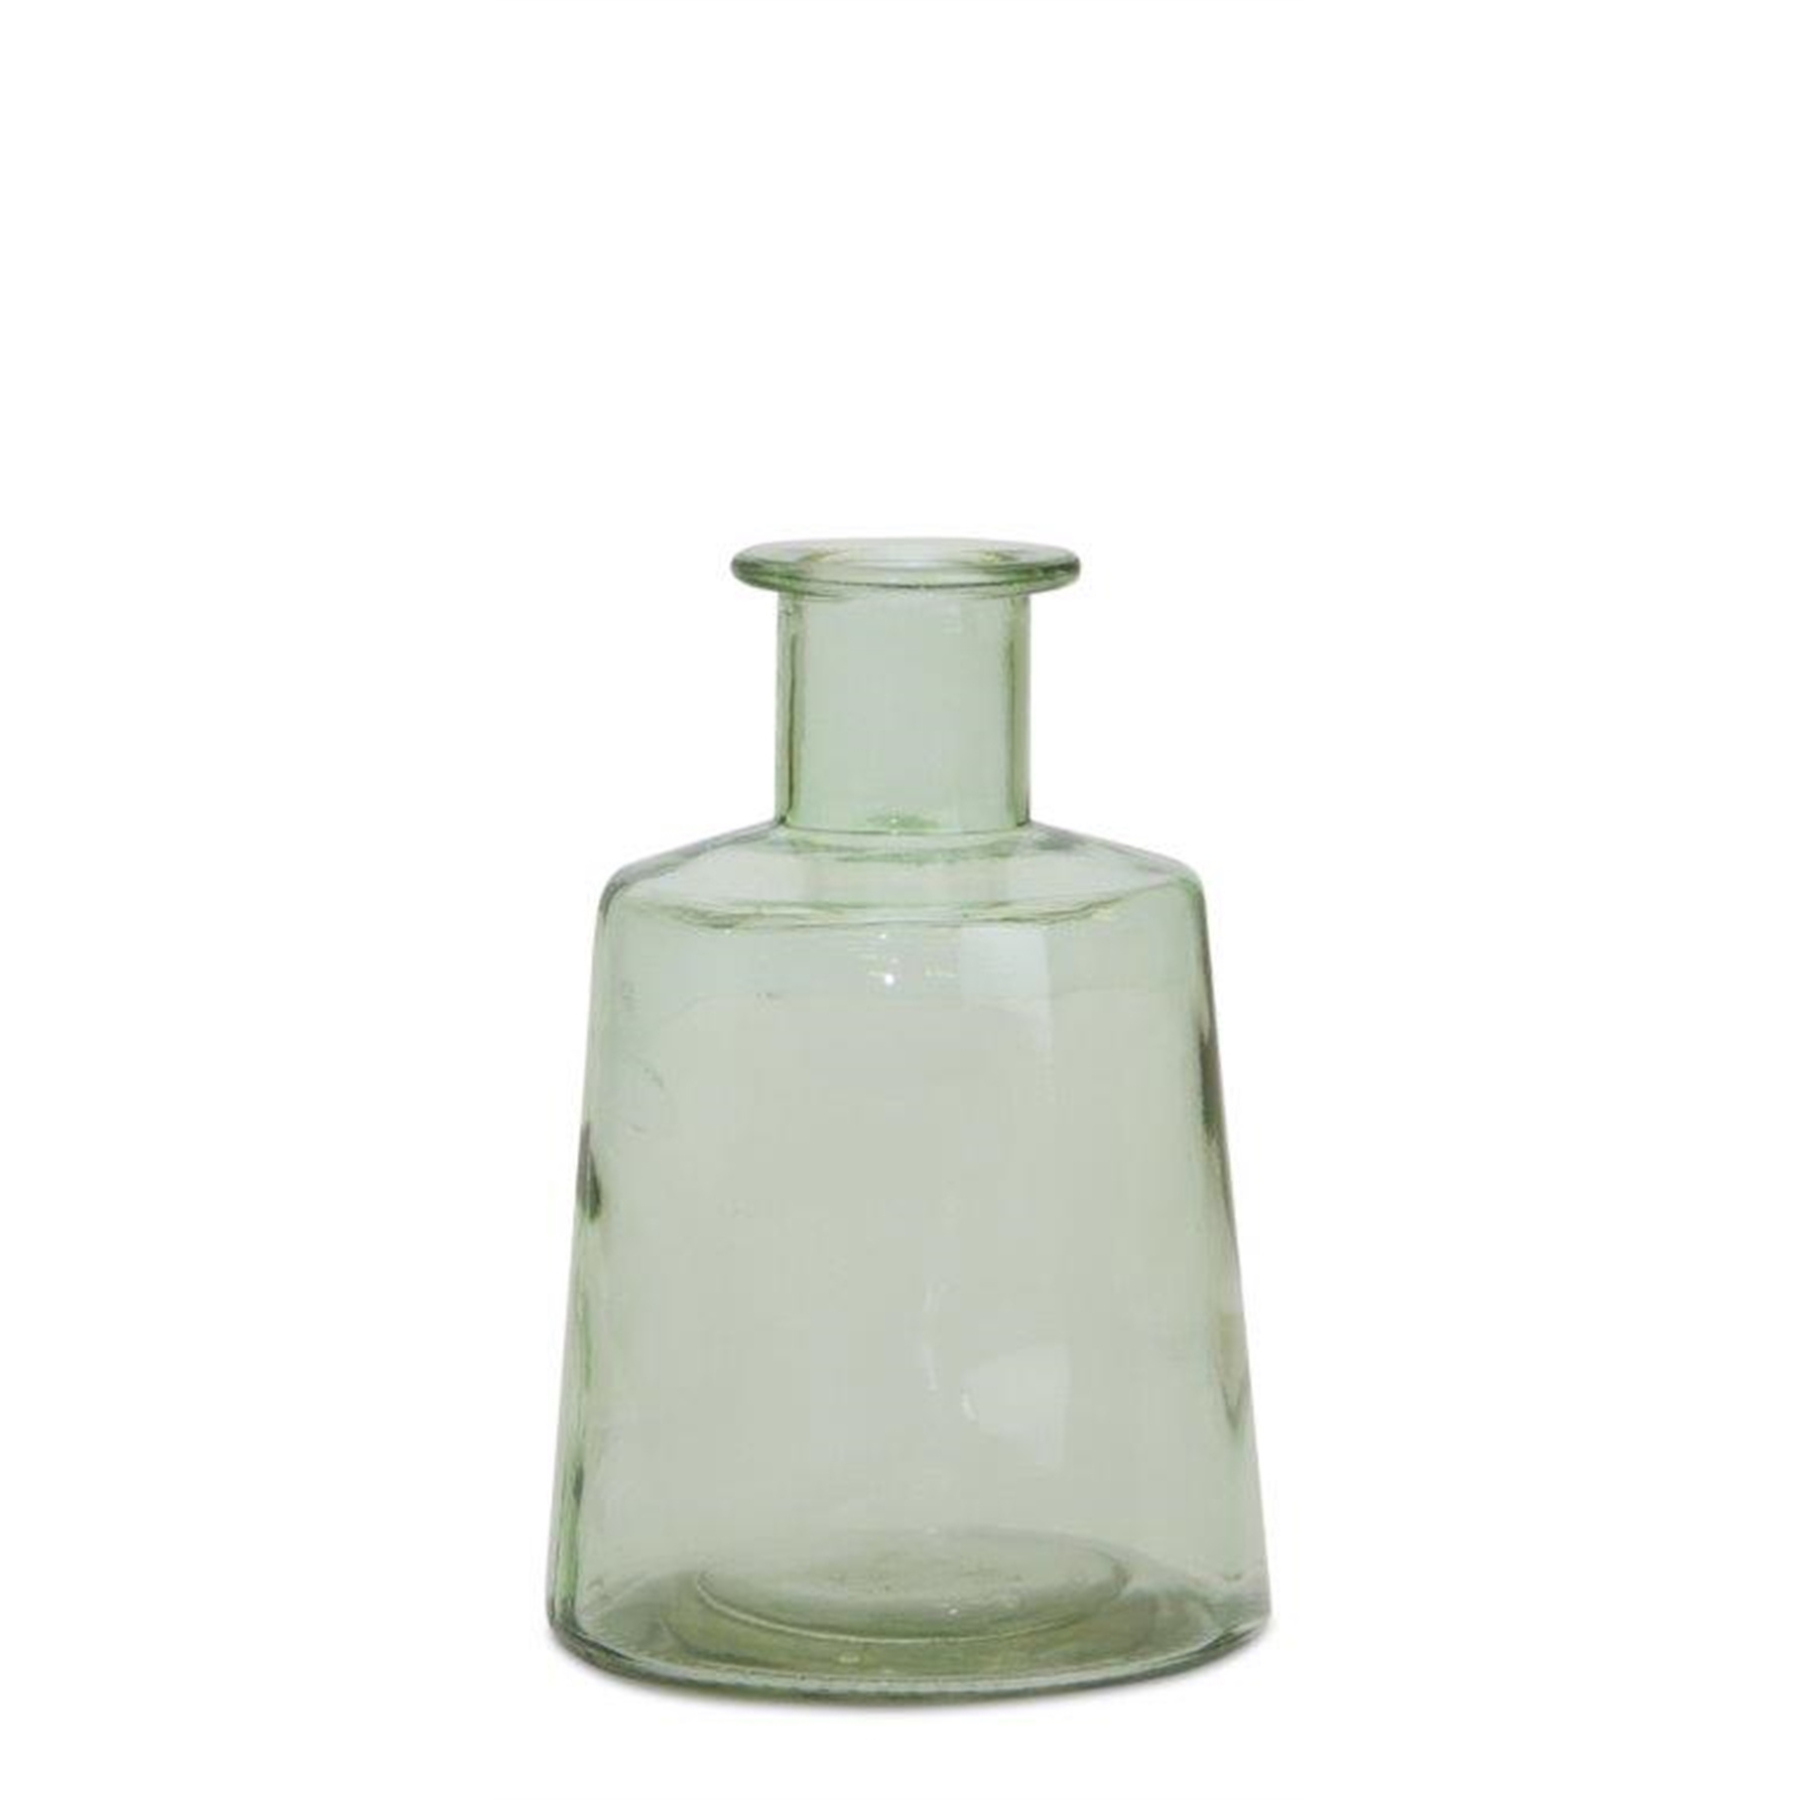 Green Glass Bottle - 7"H